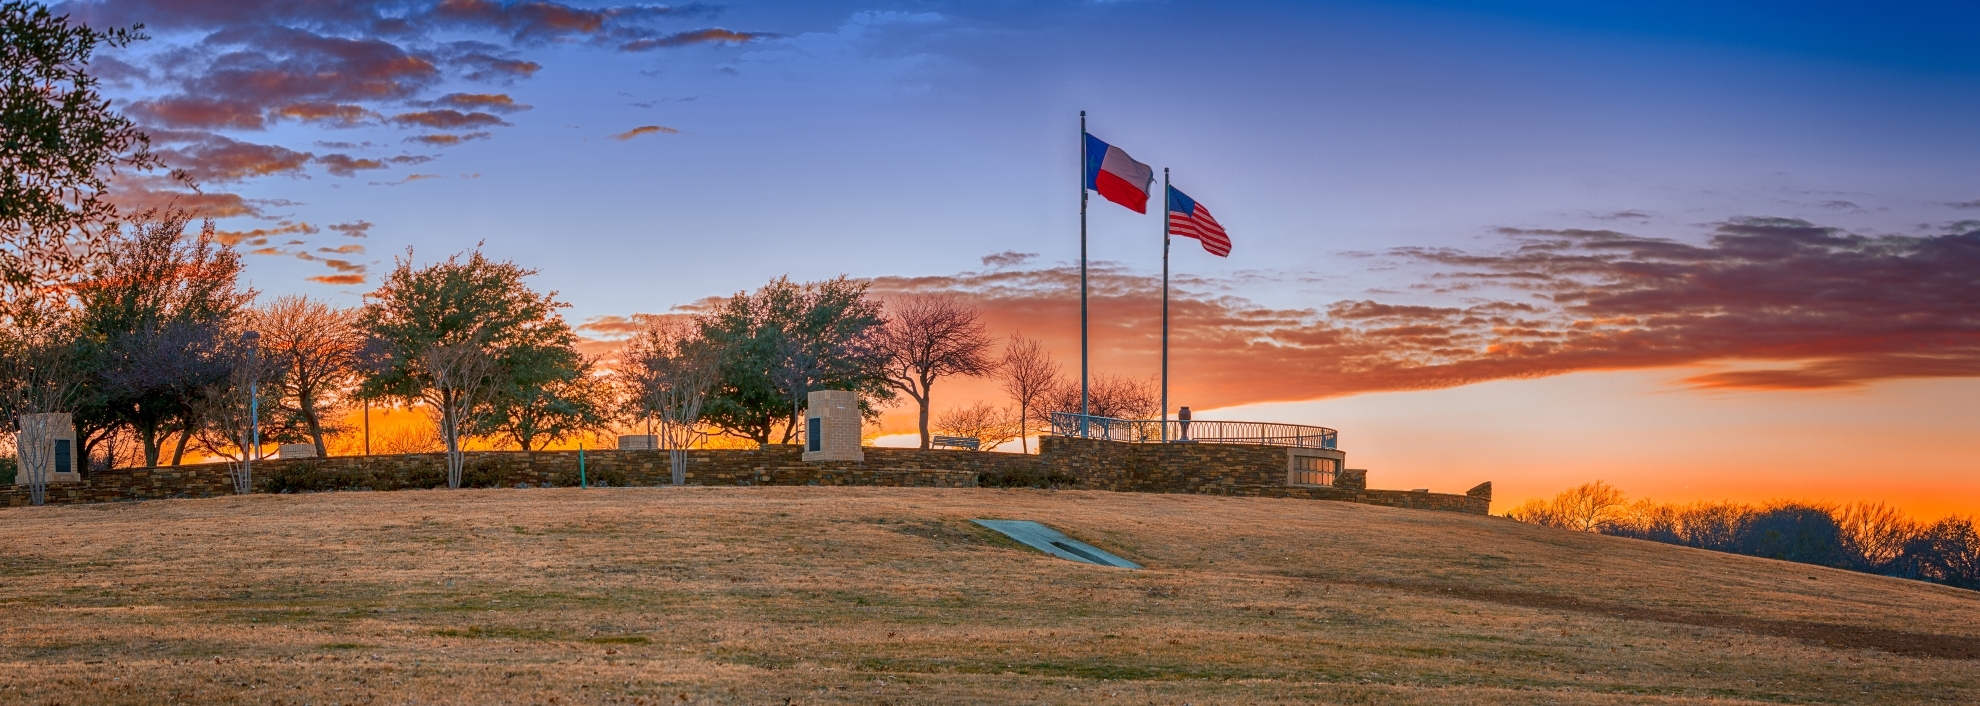 Frisco Commons Park, Texas